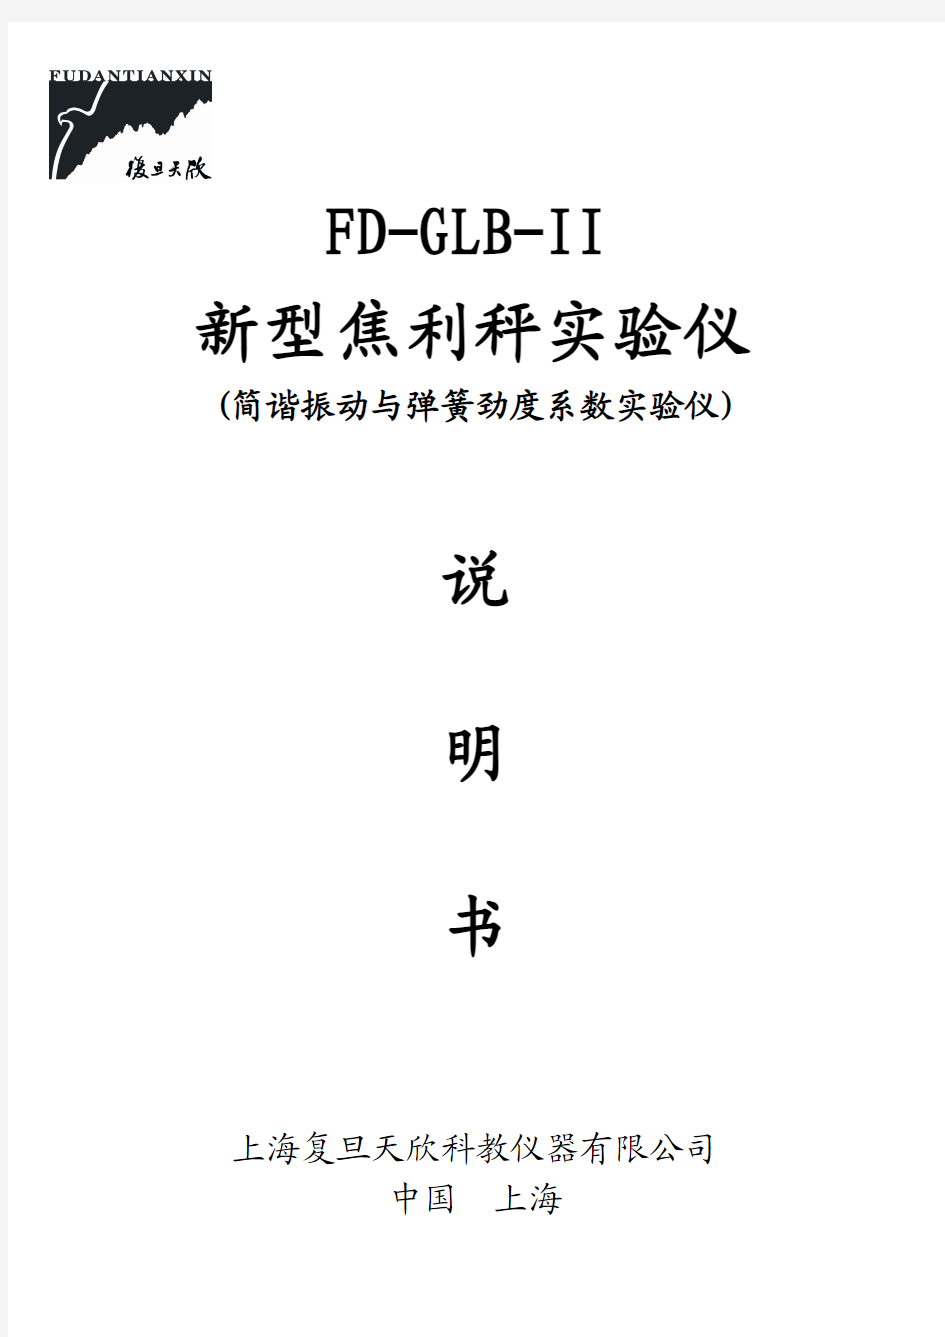 18.FD-GLB-I新型焦利称实验仪说明书